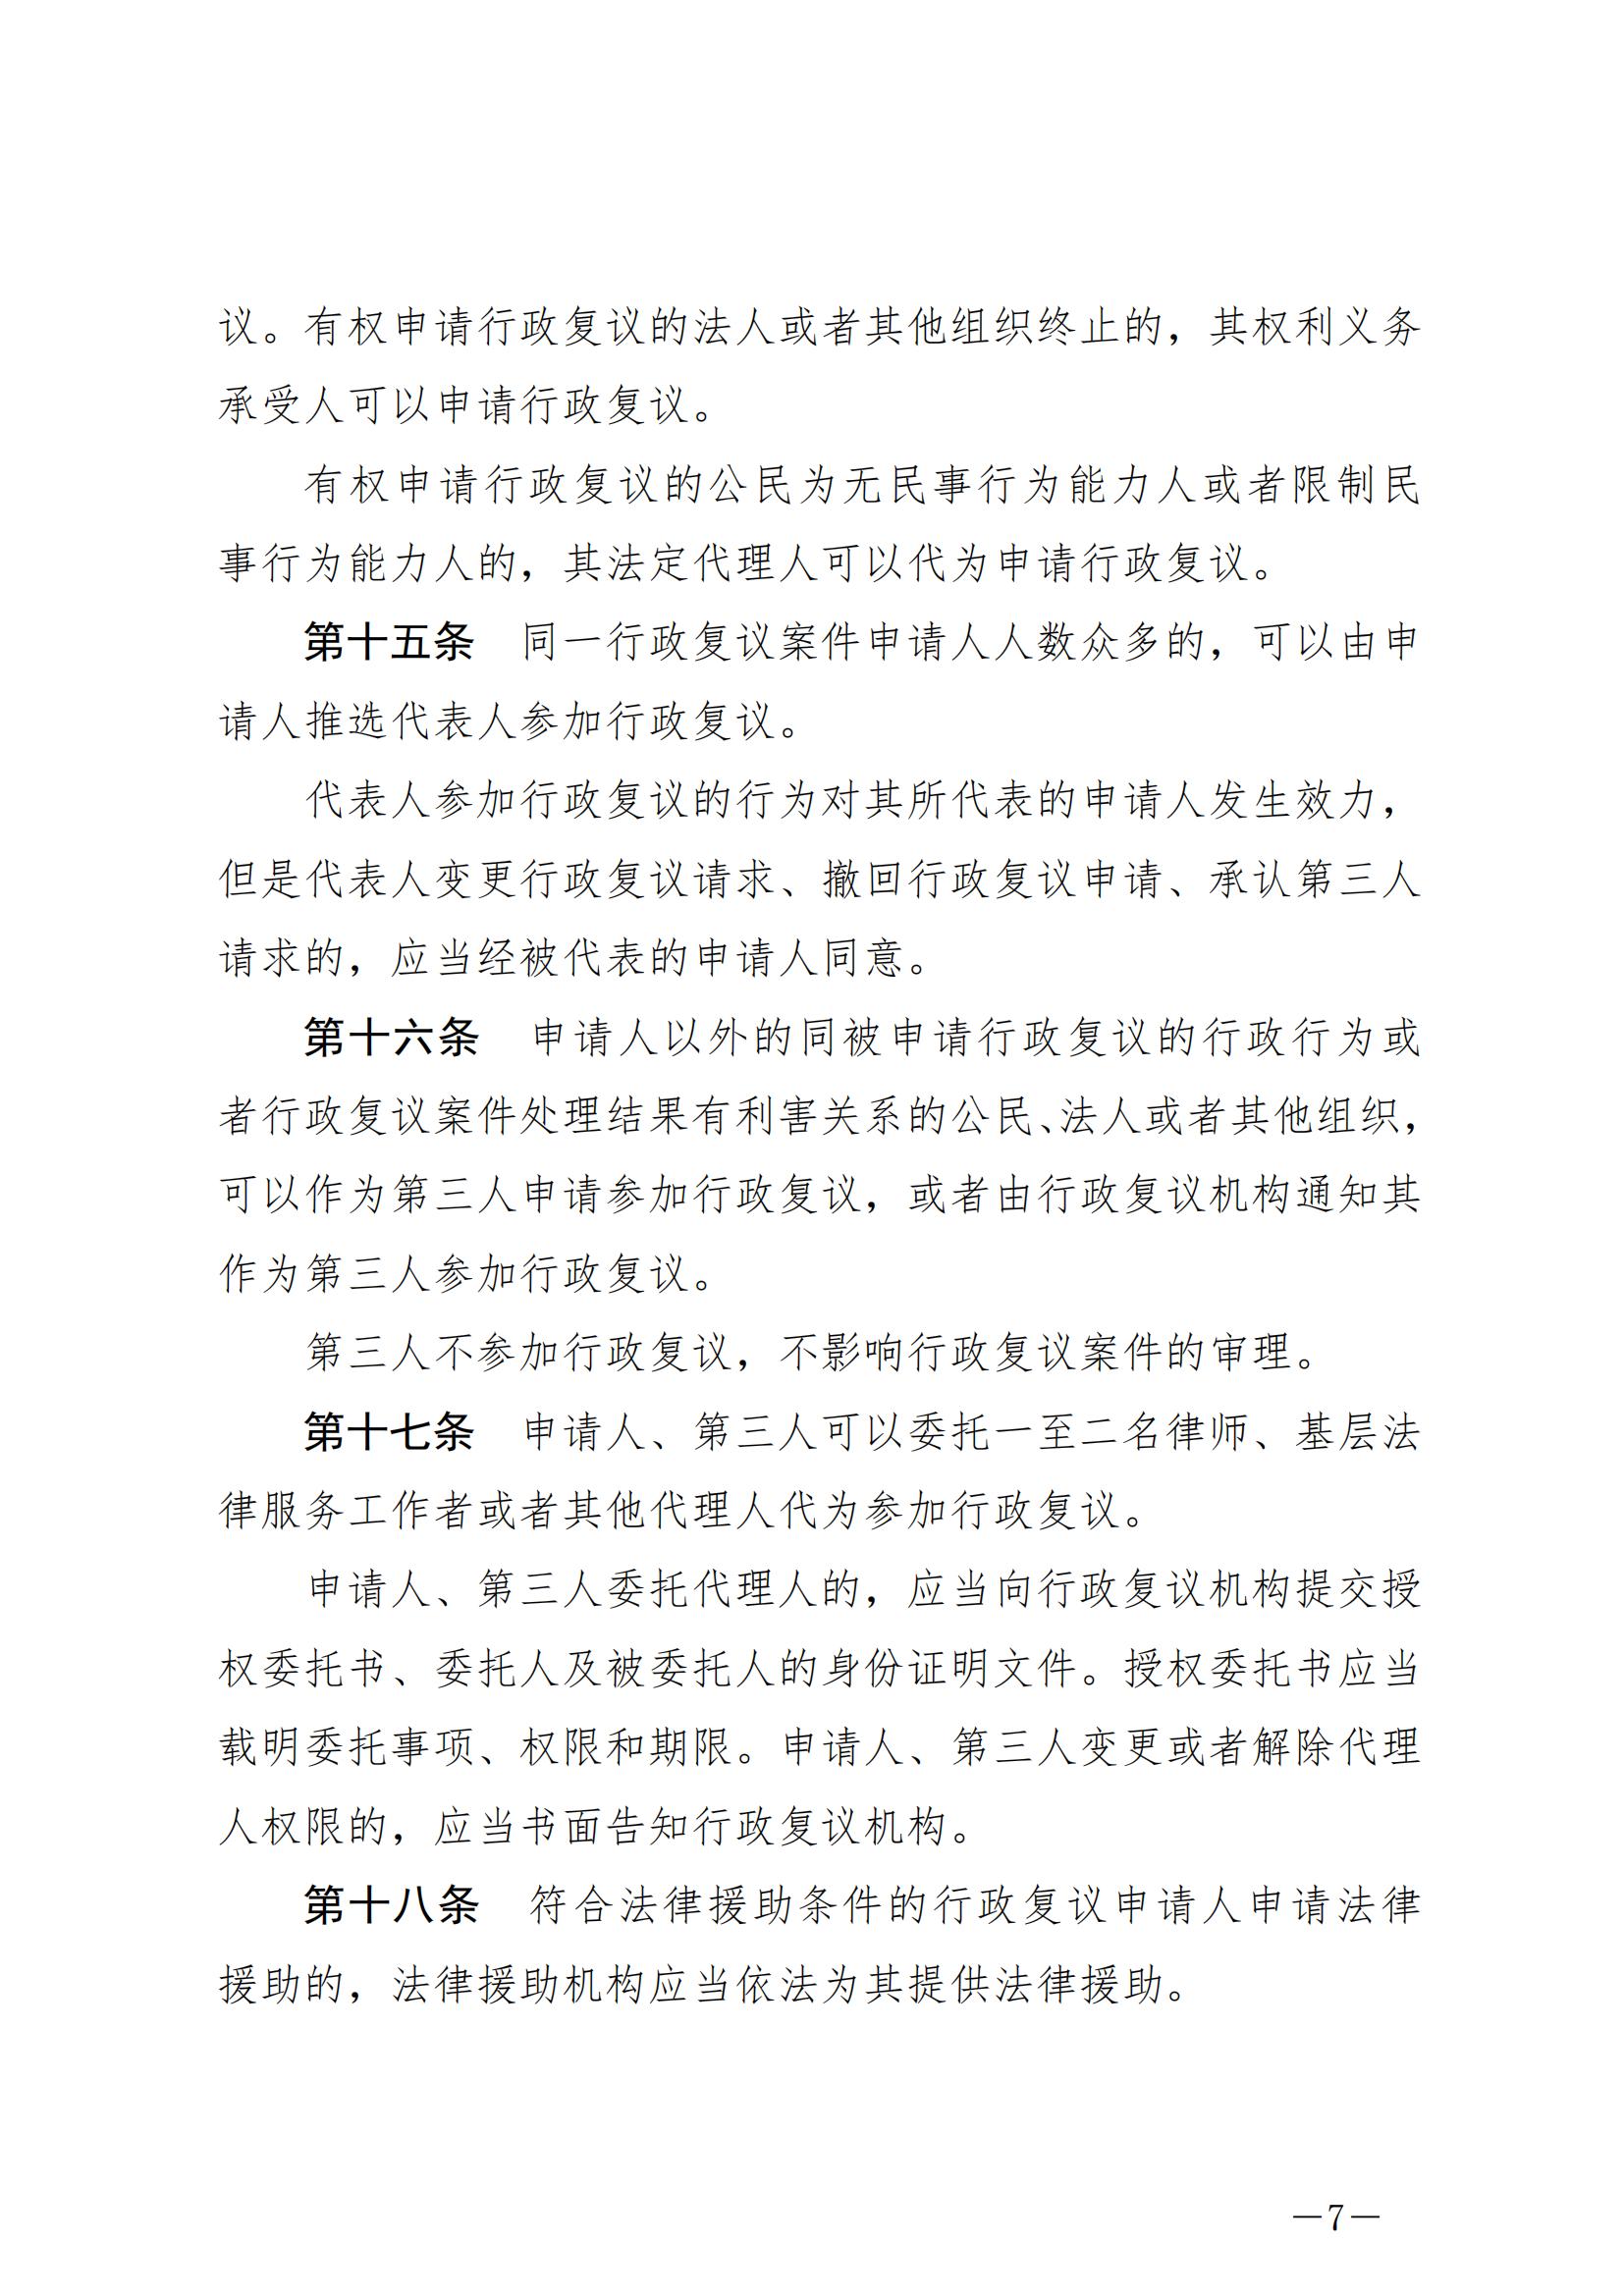 《中华人民共和国行政复议法》_20231204154310_06.jpg